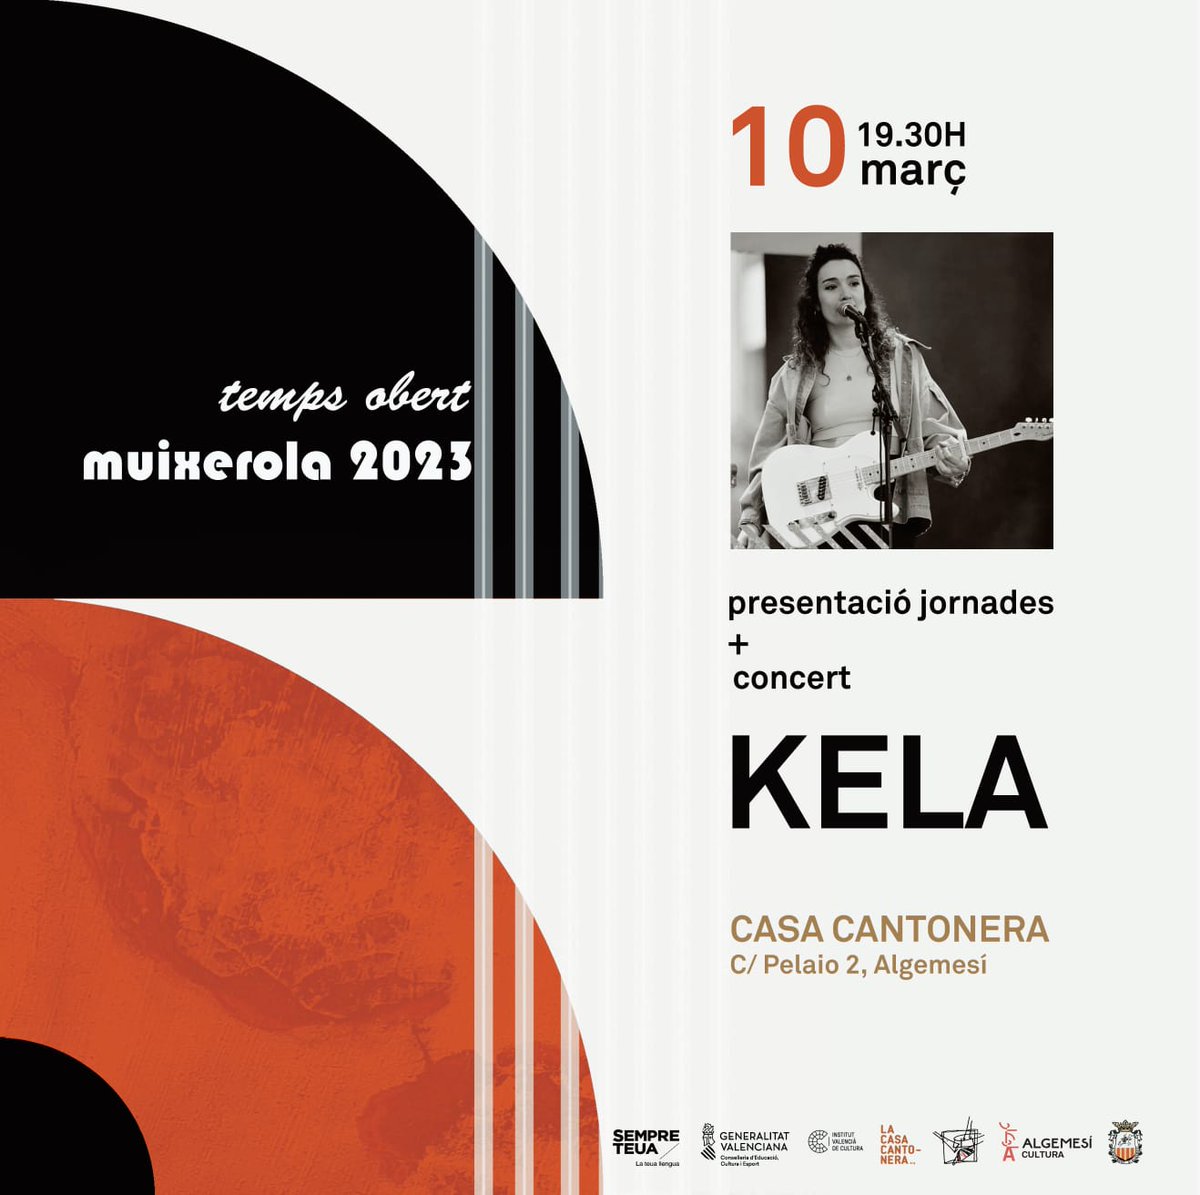 📣Divendres, 10 de març a les 19:30h comença la Muixerola a @lacasacantonera, col·lectiu a qui agraïm la seua participació any rere any.

🎸A més,  comptarem amb l'actuació de la cantautora @unatalkela, guardonada com artista revelació 2022 pel Col·lectiu Ovidi Montllor.